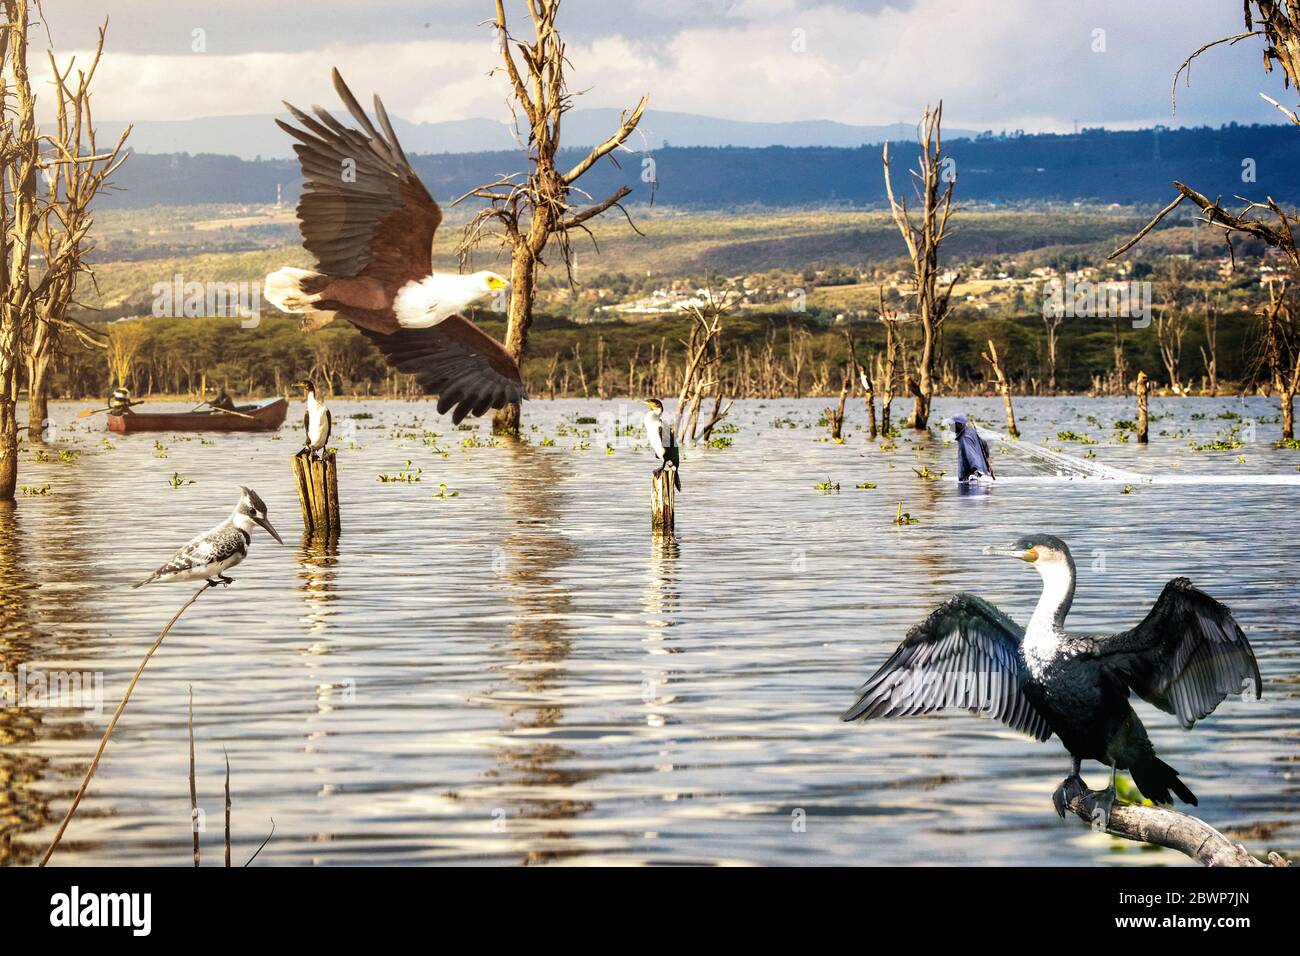 Szene von verschiedenen wilden afrikanischen Vögeln, die um den Lake Naivasha in Kenia, Afrika mit Booten und Fischern fliegen Stockfoto